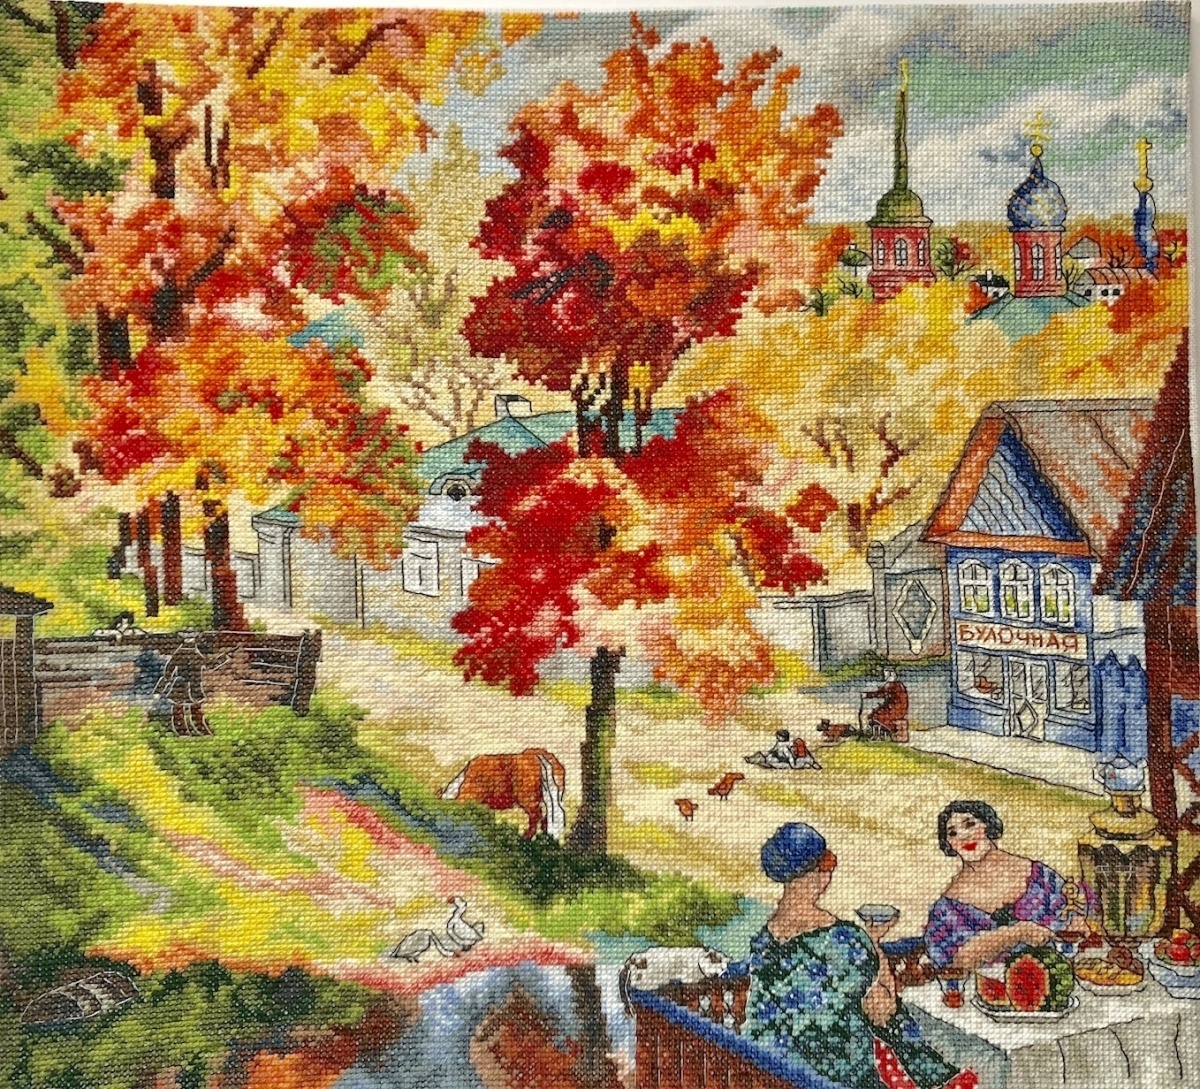 In the City of Autumn Cross Stitch Pattern, code AP-199 Anna Petunova